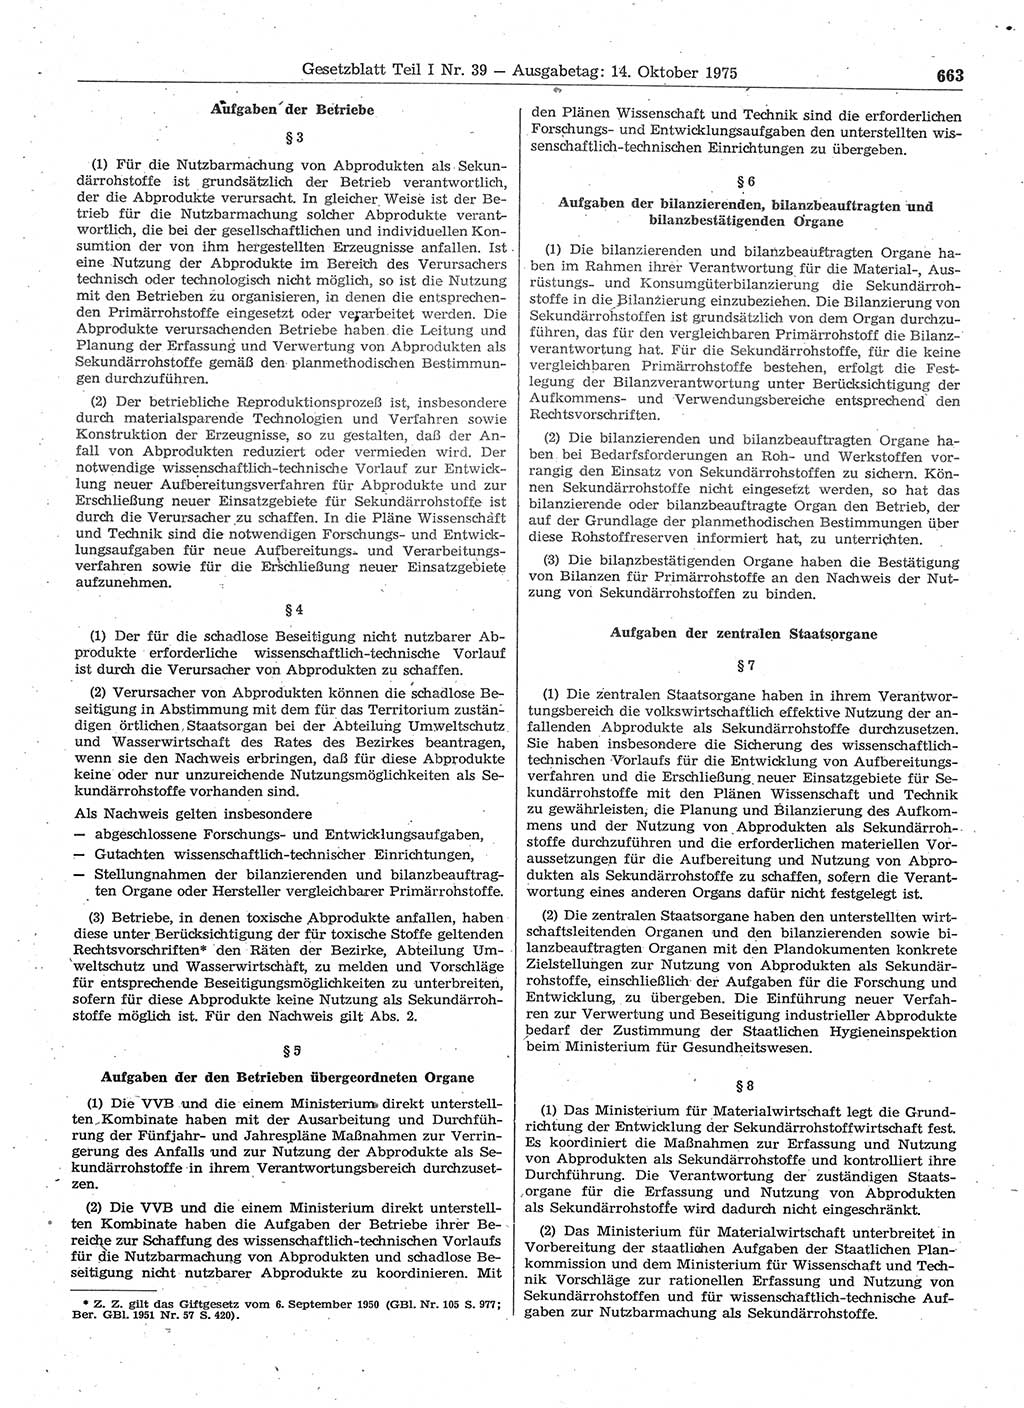 Gesetzblatt (GBl.) der Deutschen Demokratischen Republik (DDR) Teil Ⅰ 1975, Seite 663 (GBl. DDR Ⅰ 1975, S. 663)